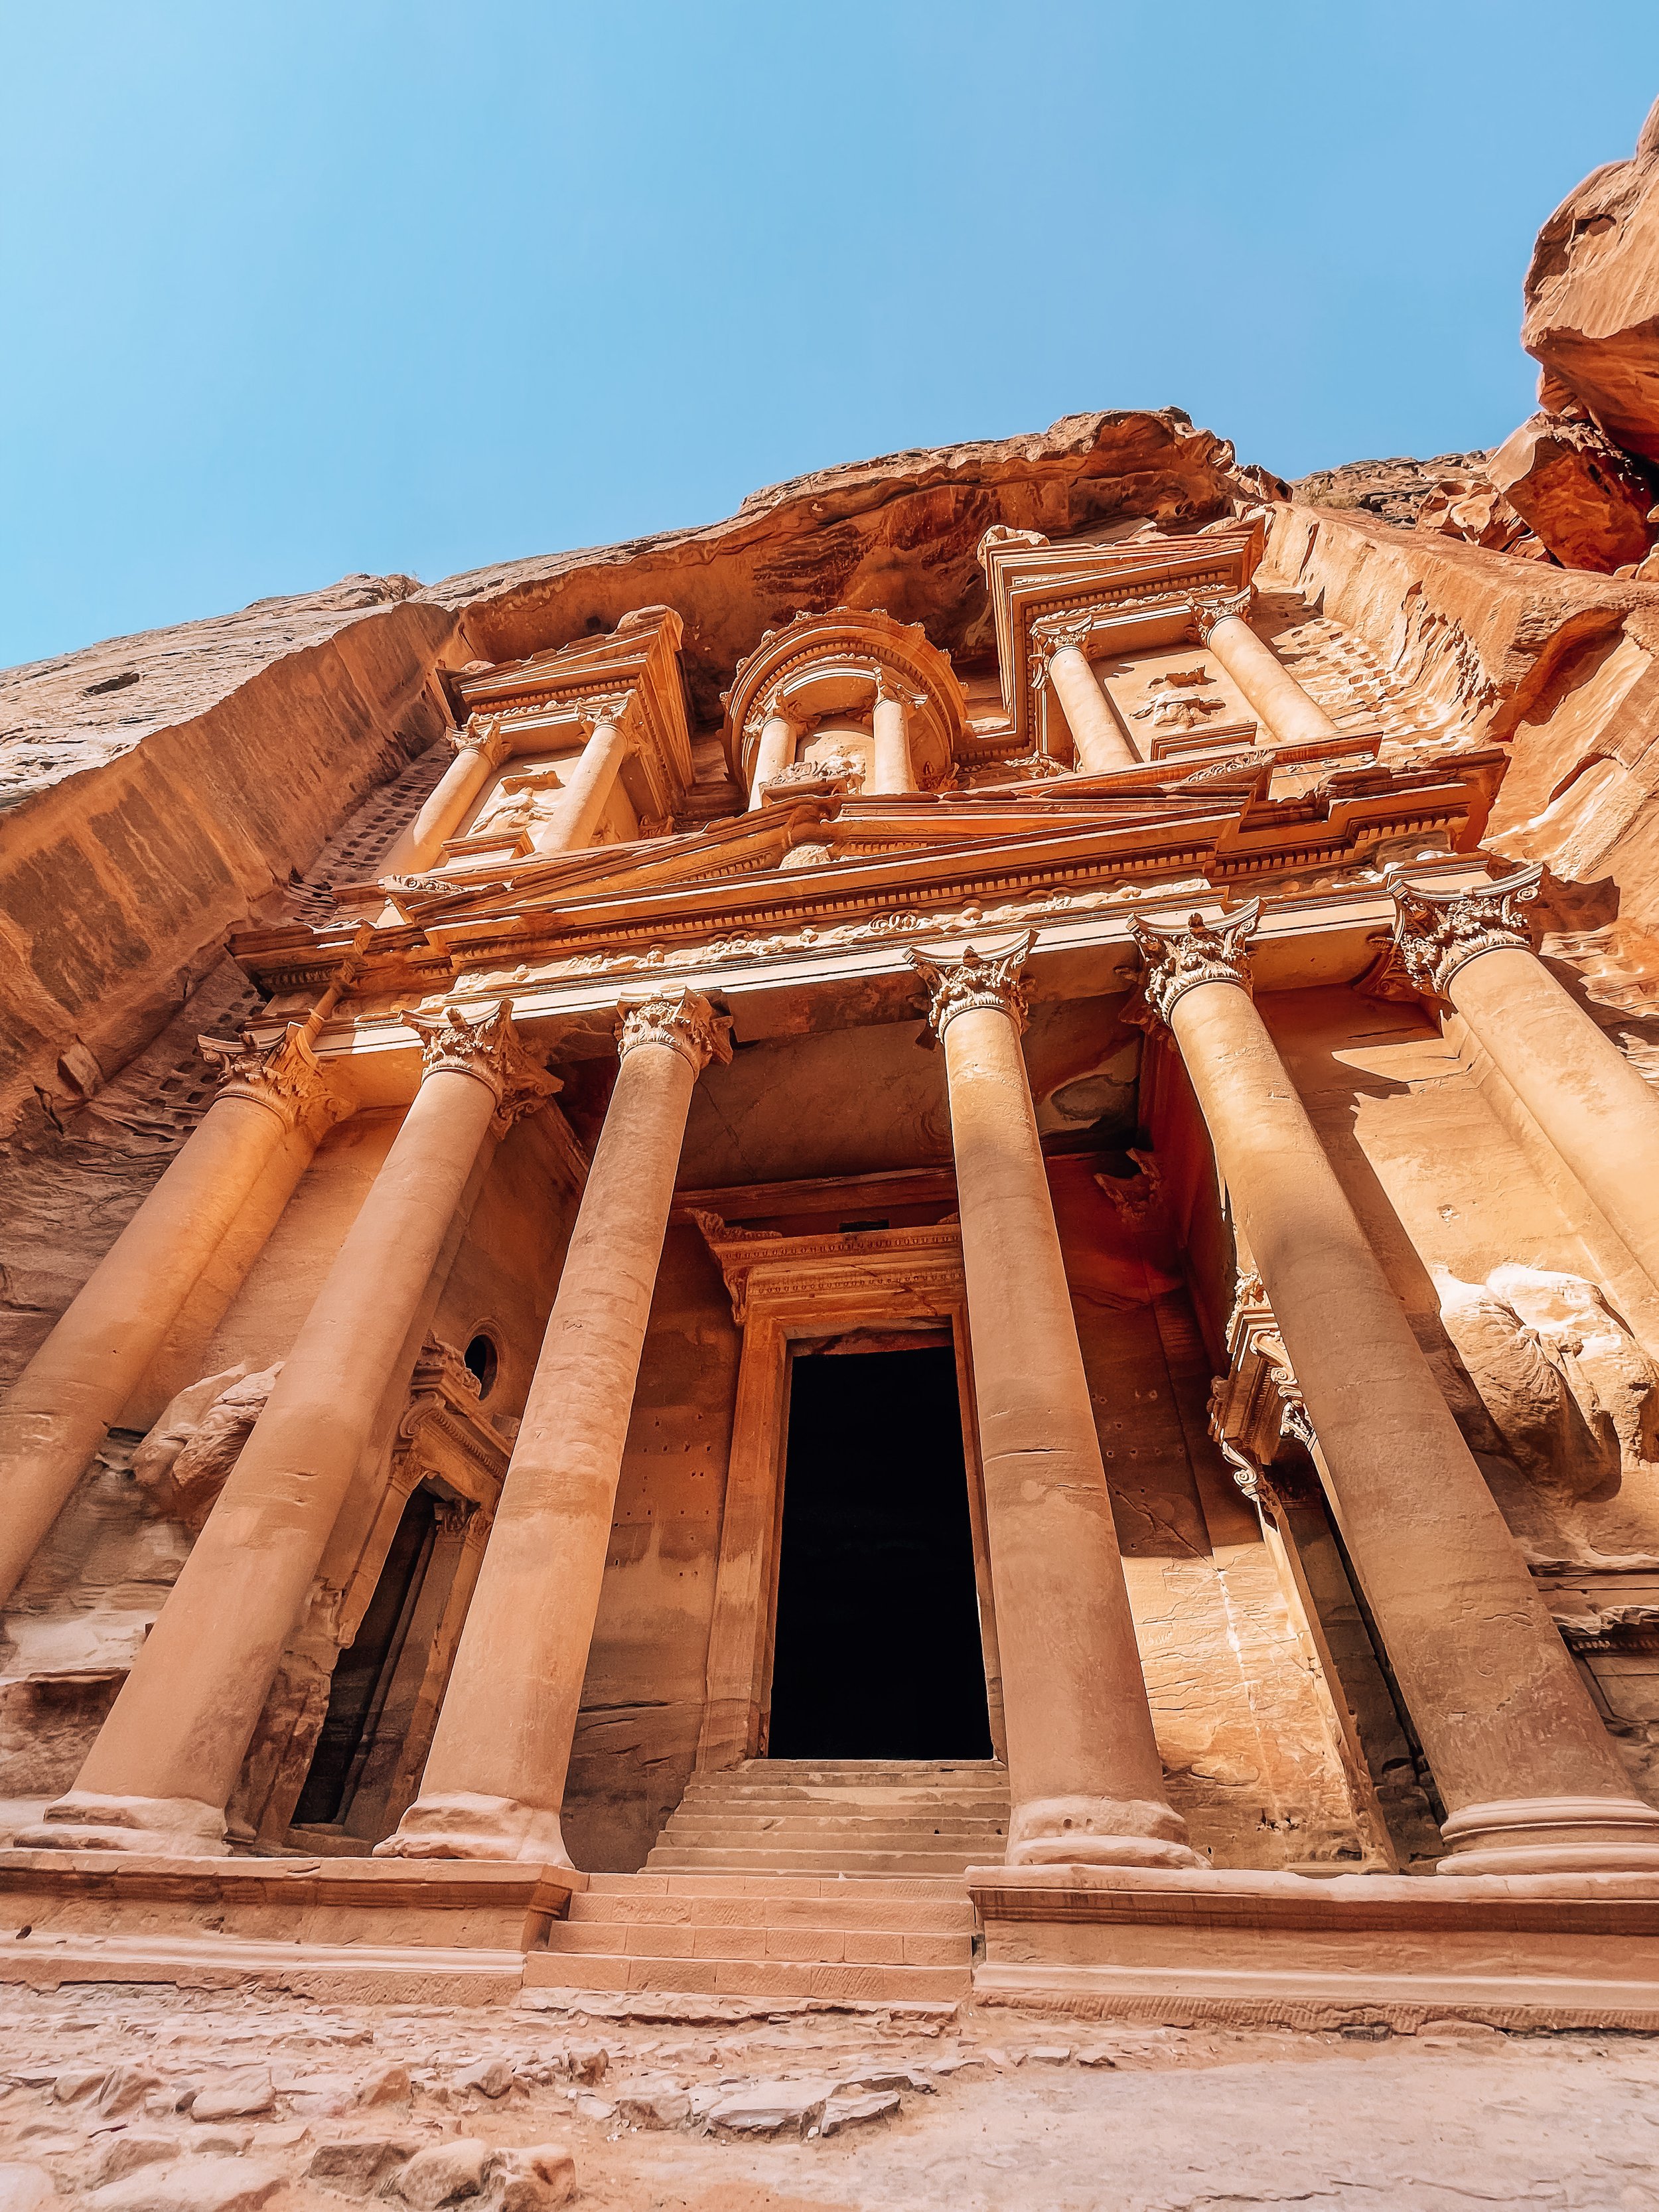  Travel Guide to Jordan - Petra 